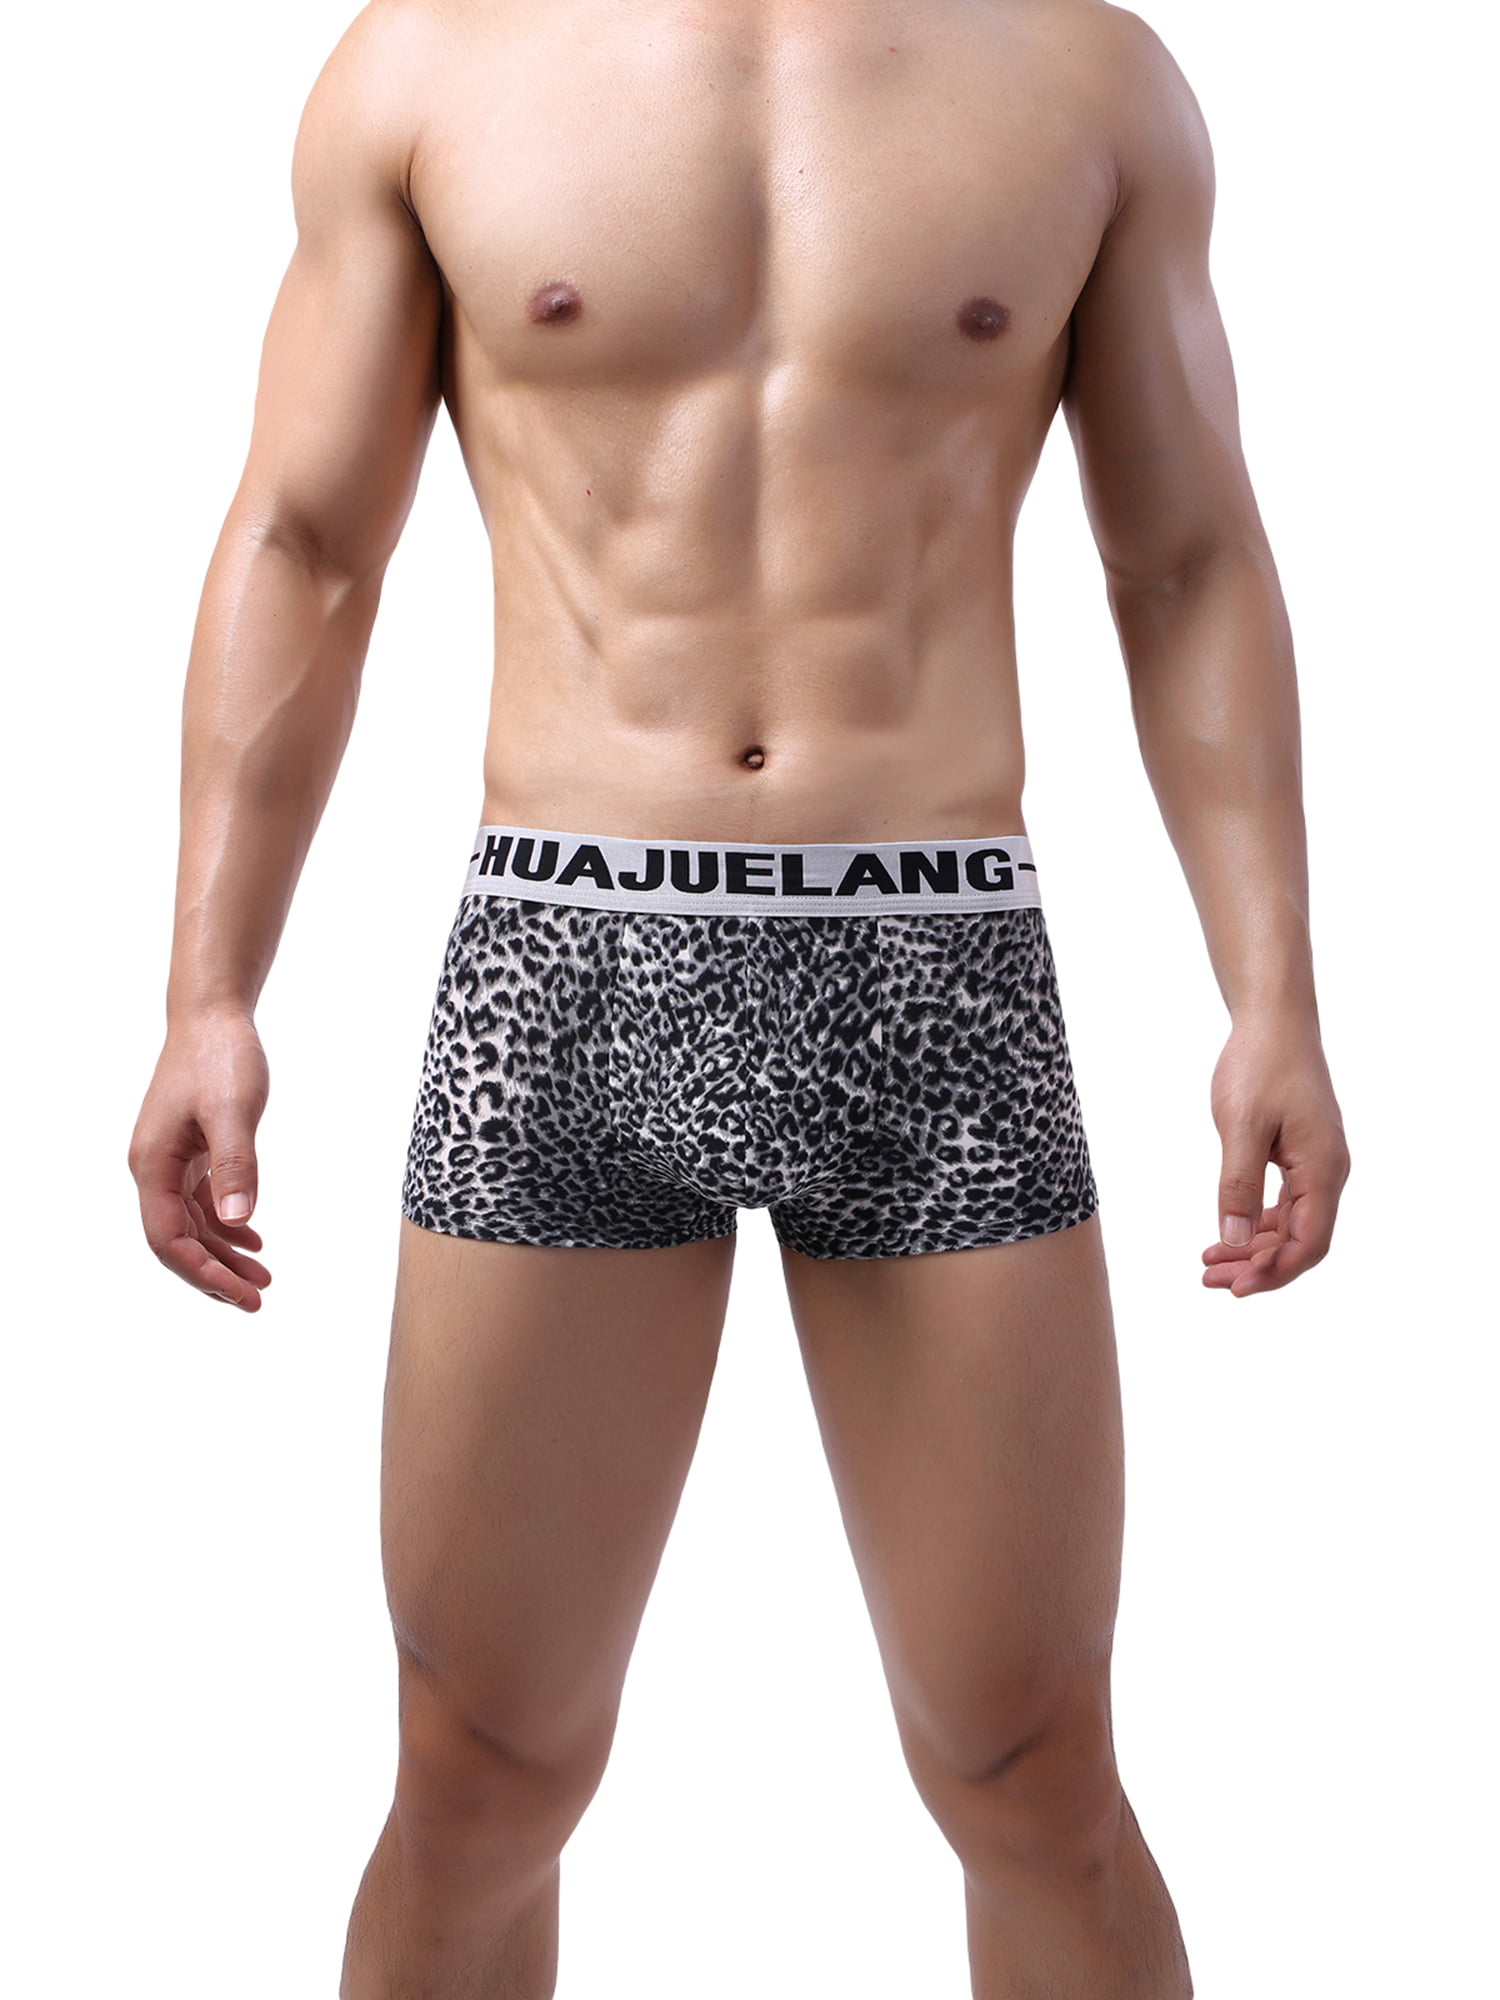 Men Leopard Breathable Boxer Briefs Pouch Underwear Shorts Trunks Underpants US 